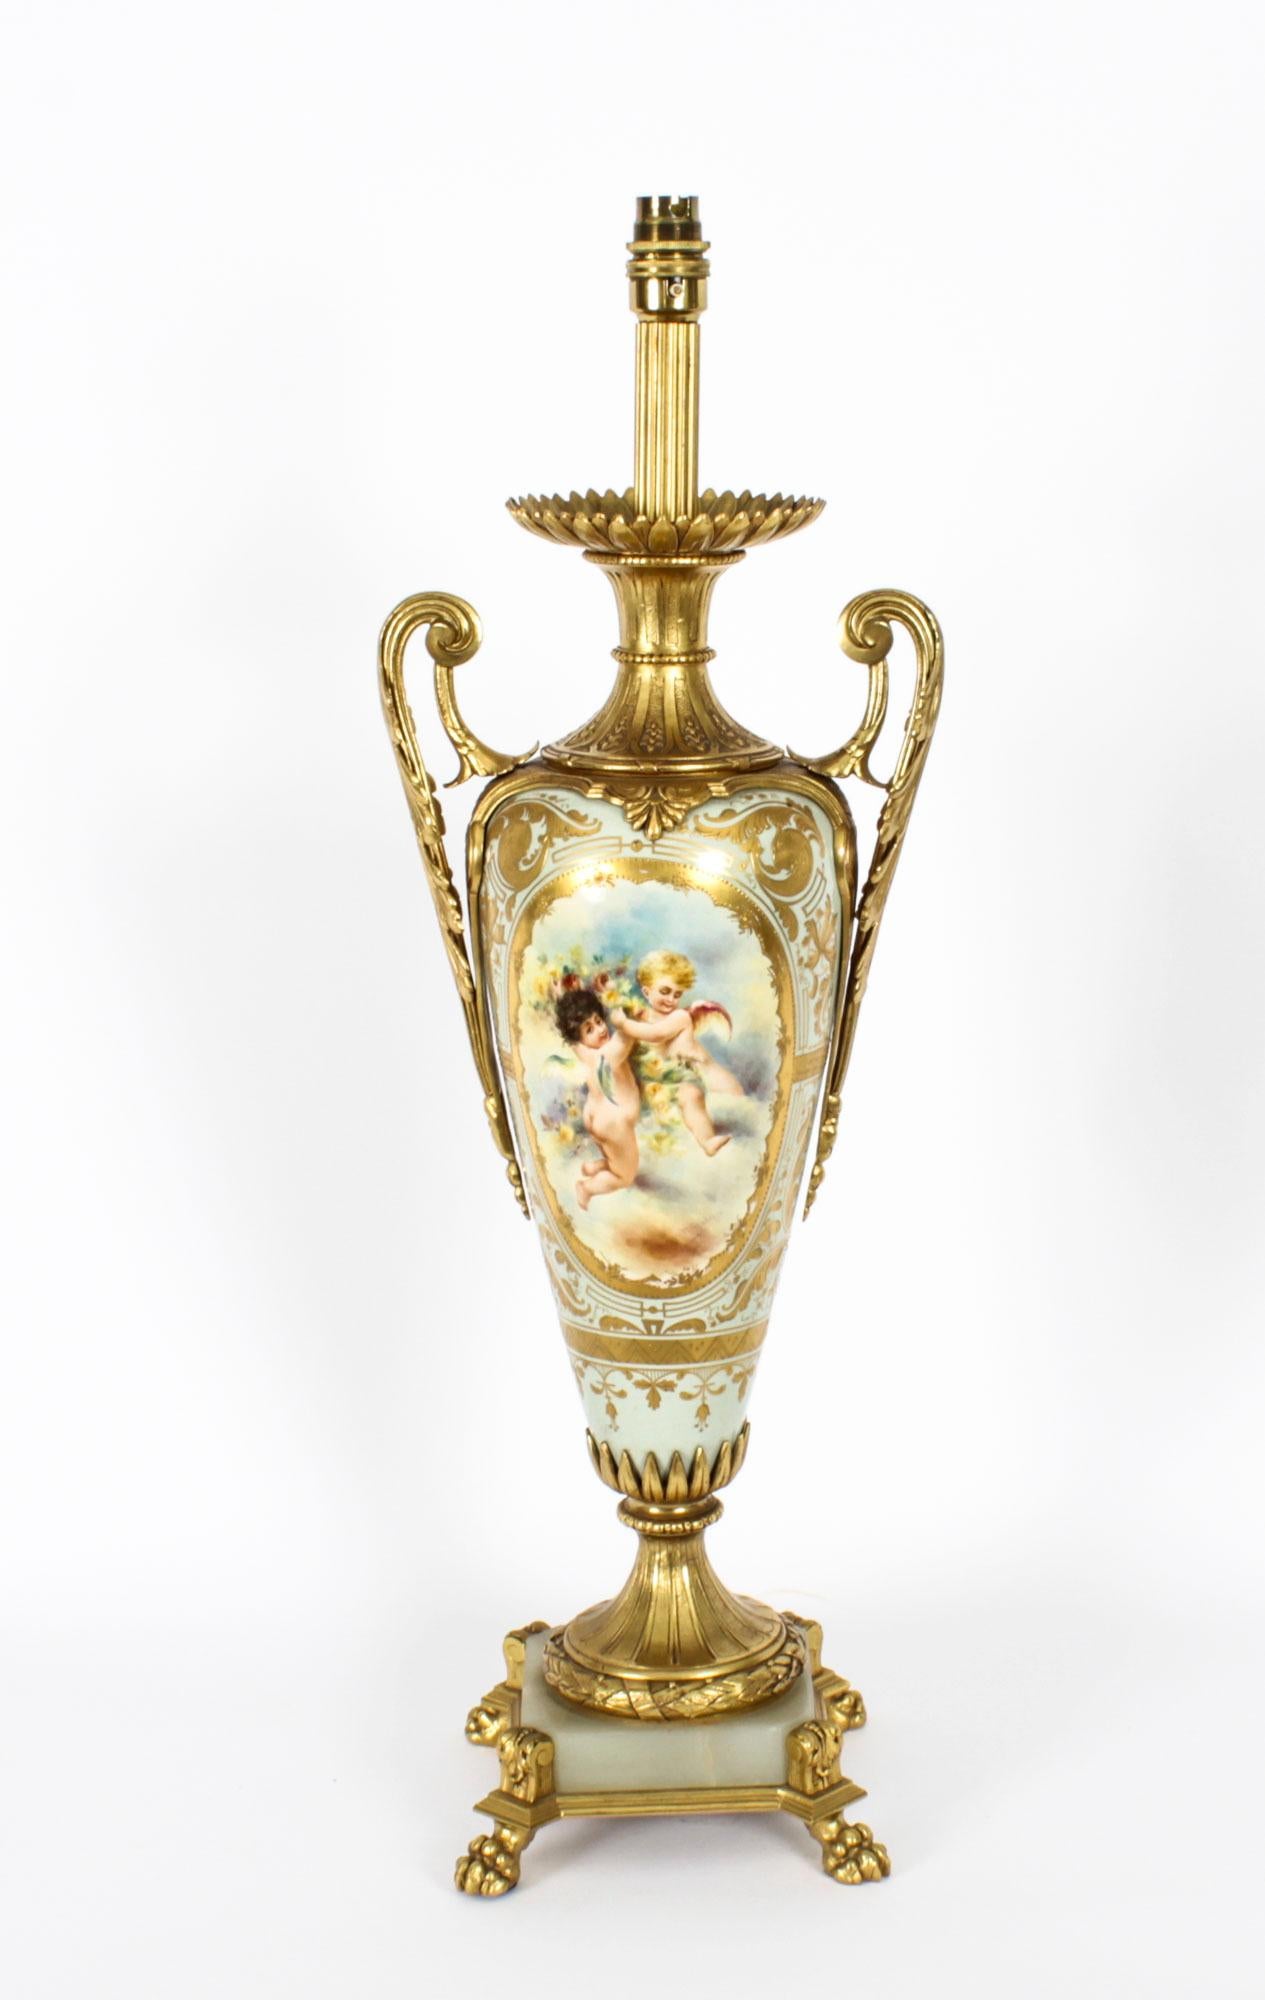 Il s'agit d'une superbe et grande antiquité française  Vase monté en porcelaine peinte à la main et en bronze doré de Sèvres, daté d'environ 1870, transformé ultérieurement en lampe.
 
Le corps ovoïde en porcelaine est peint de panneaux encadrés de